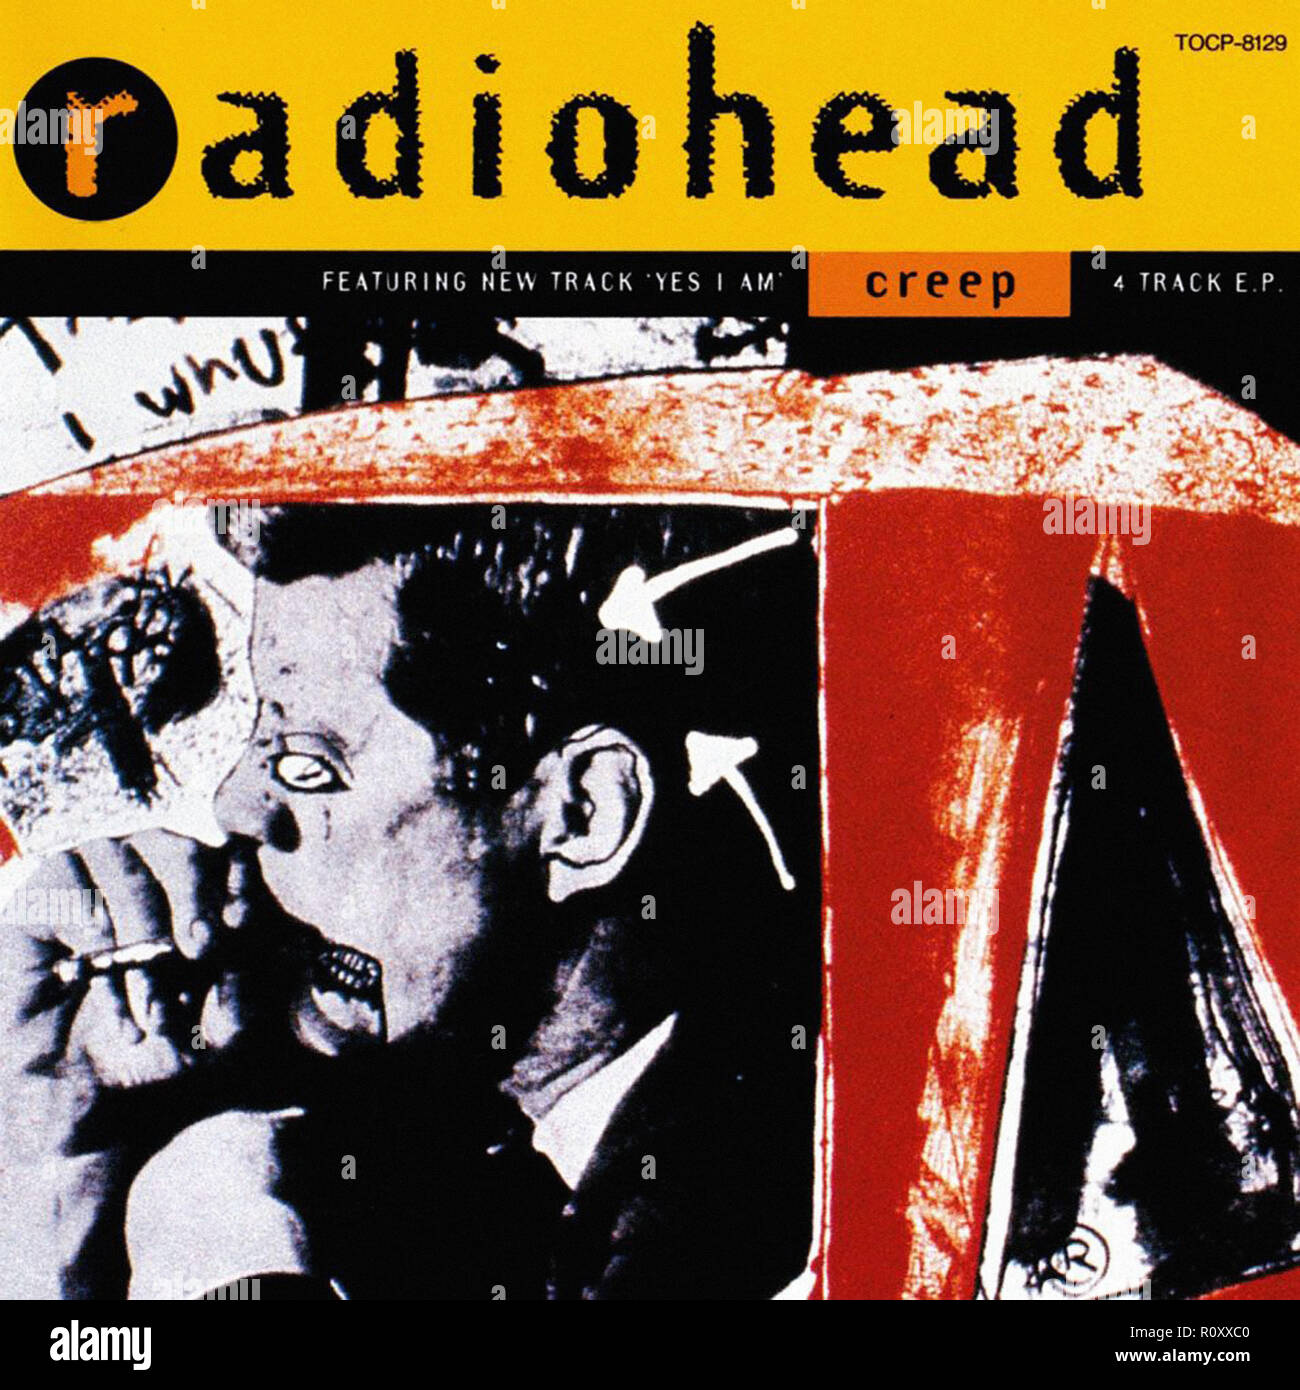 RADIOHEAD - CREEP - Vintage cover album Stock Photo - Alamy